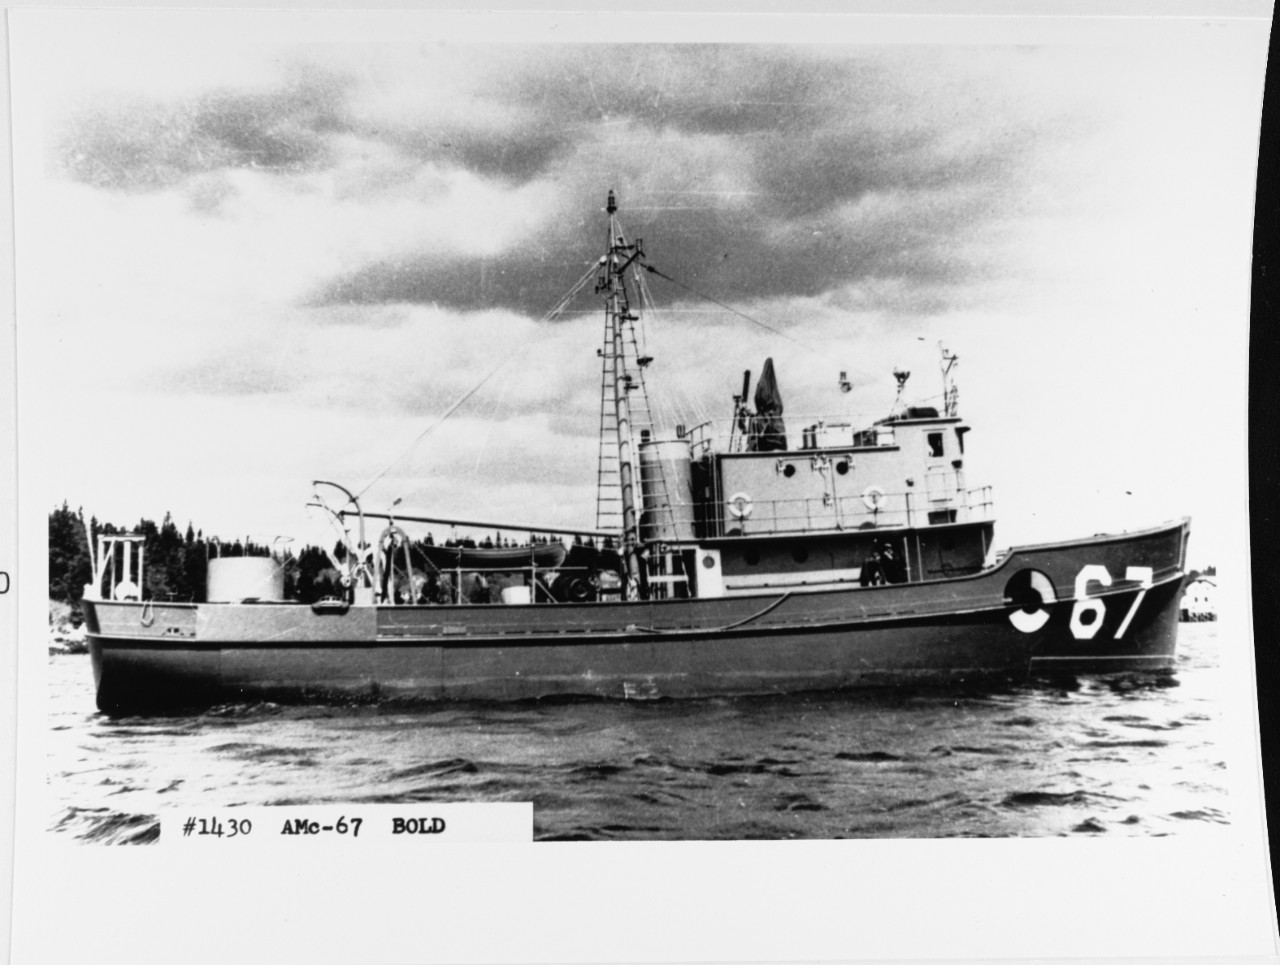 USS BOLD (AMc-67)